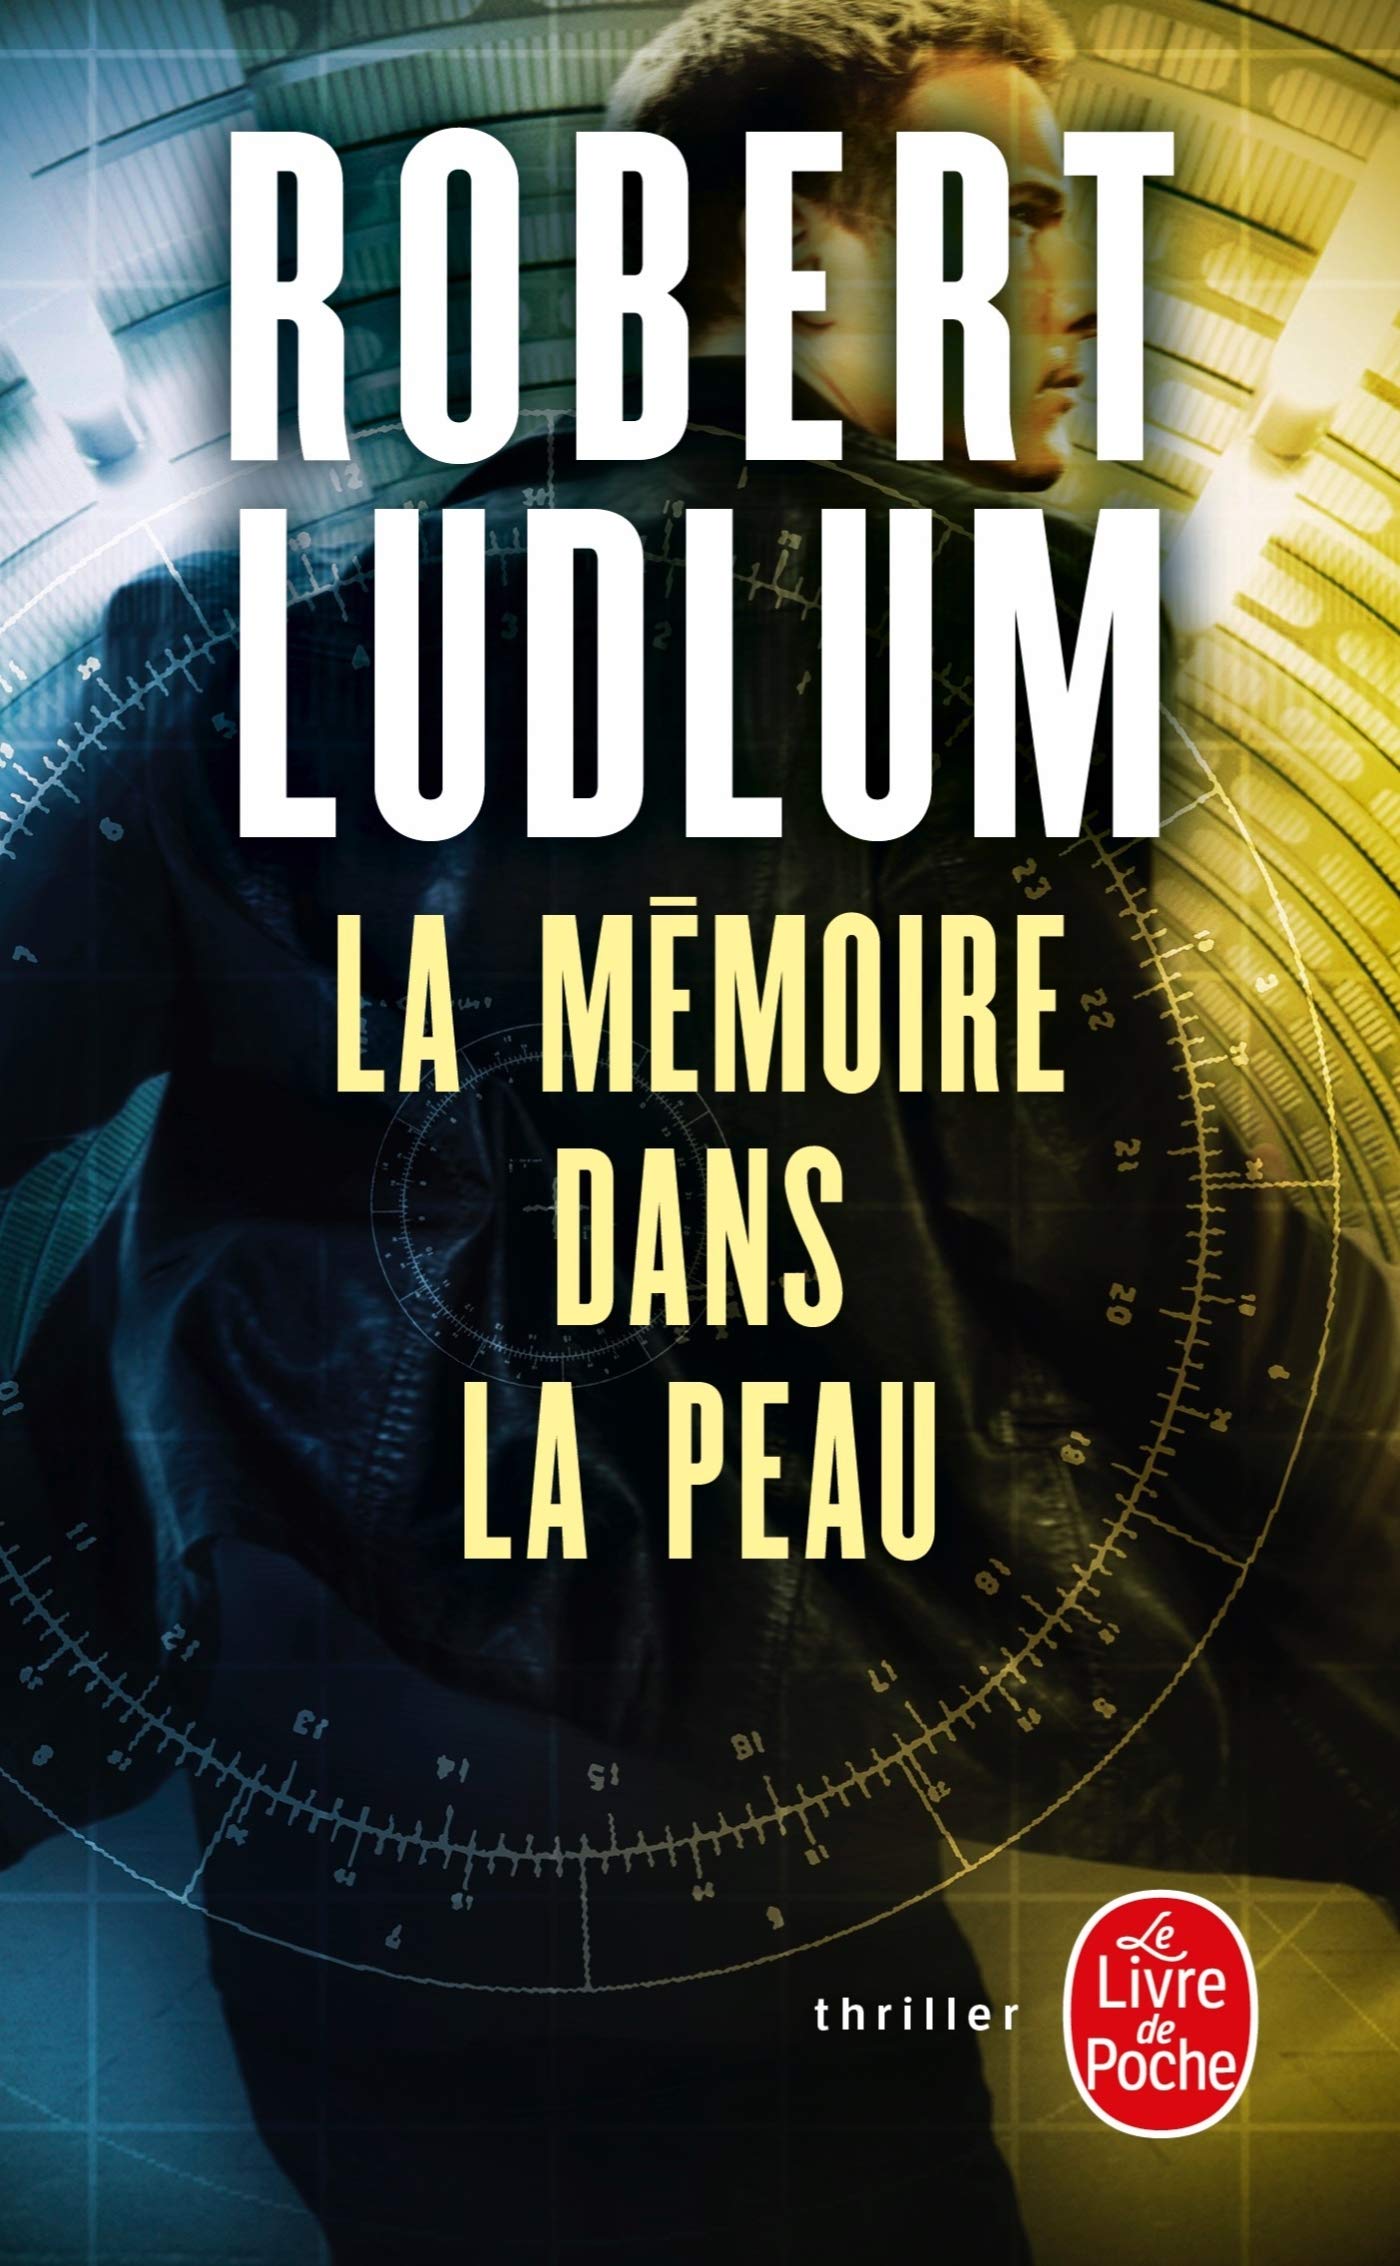 La mémoire dans la peau # 1 - Robert Ludlum